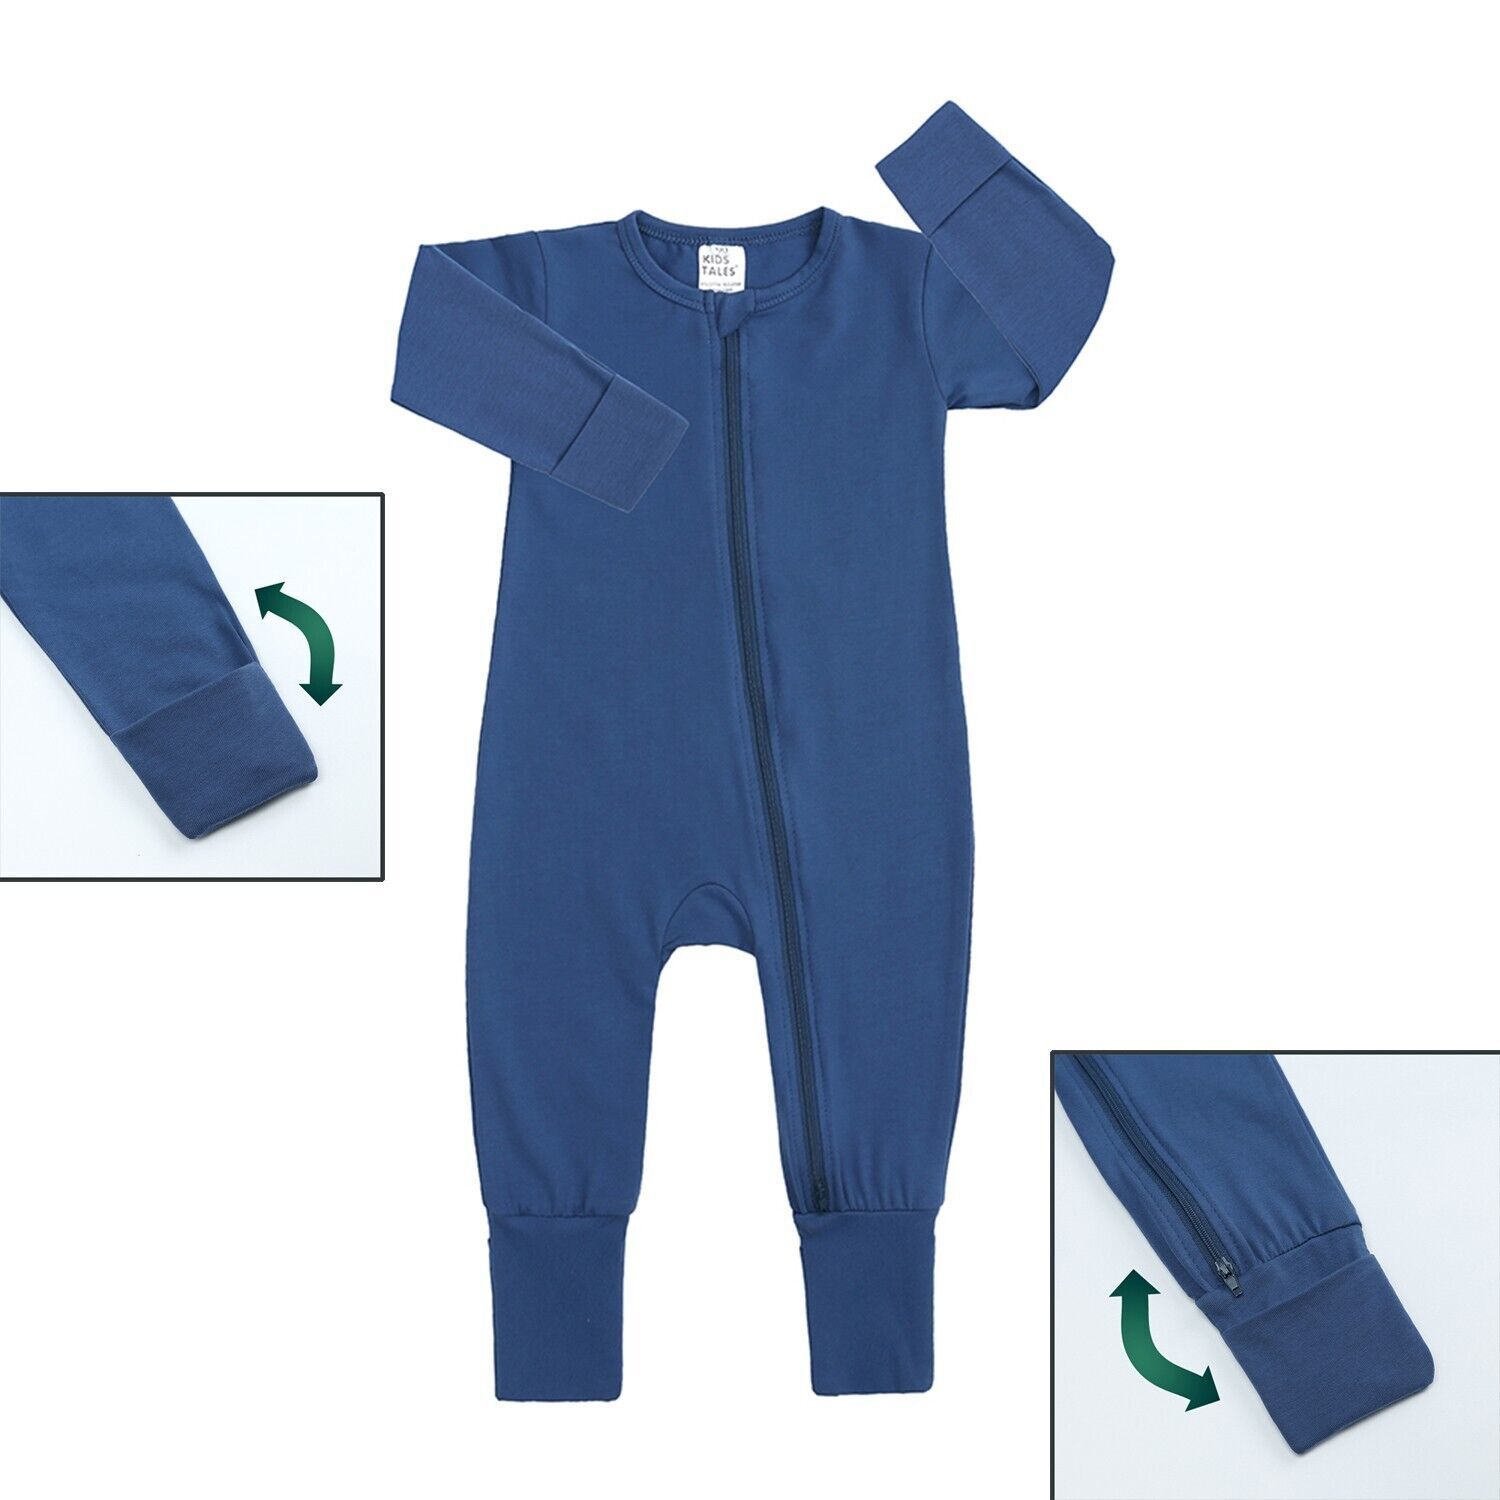 BEST BABY ROMPER BLUE 18-24Mo Cotton Double Zipper Infant Bodysuit Unisex Pajama